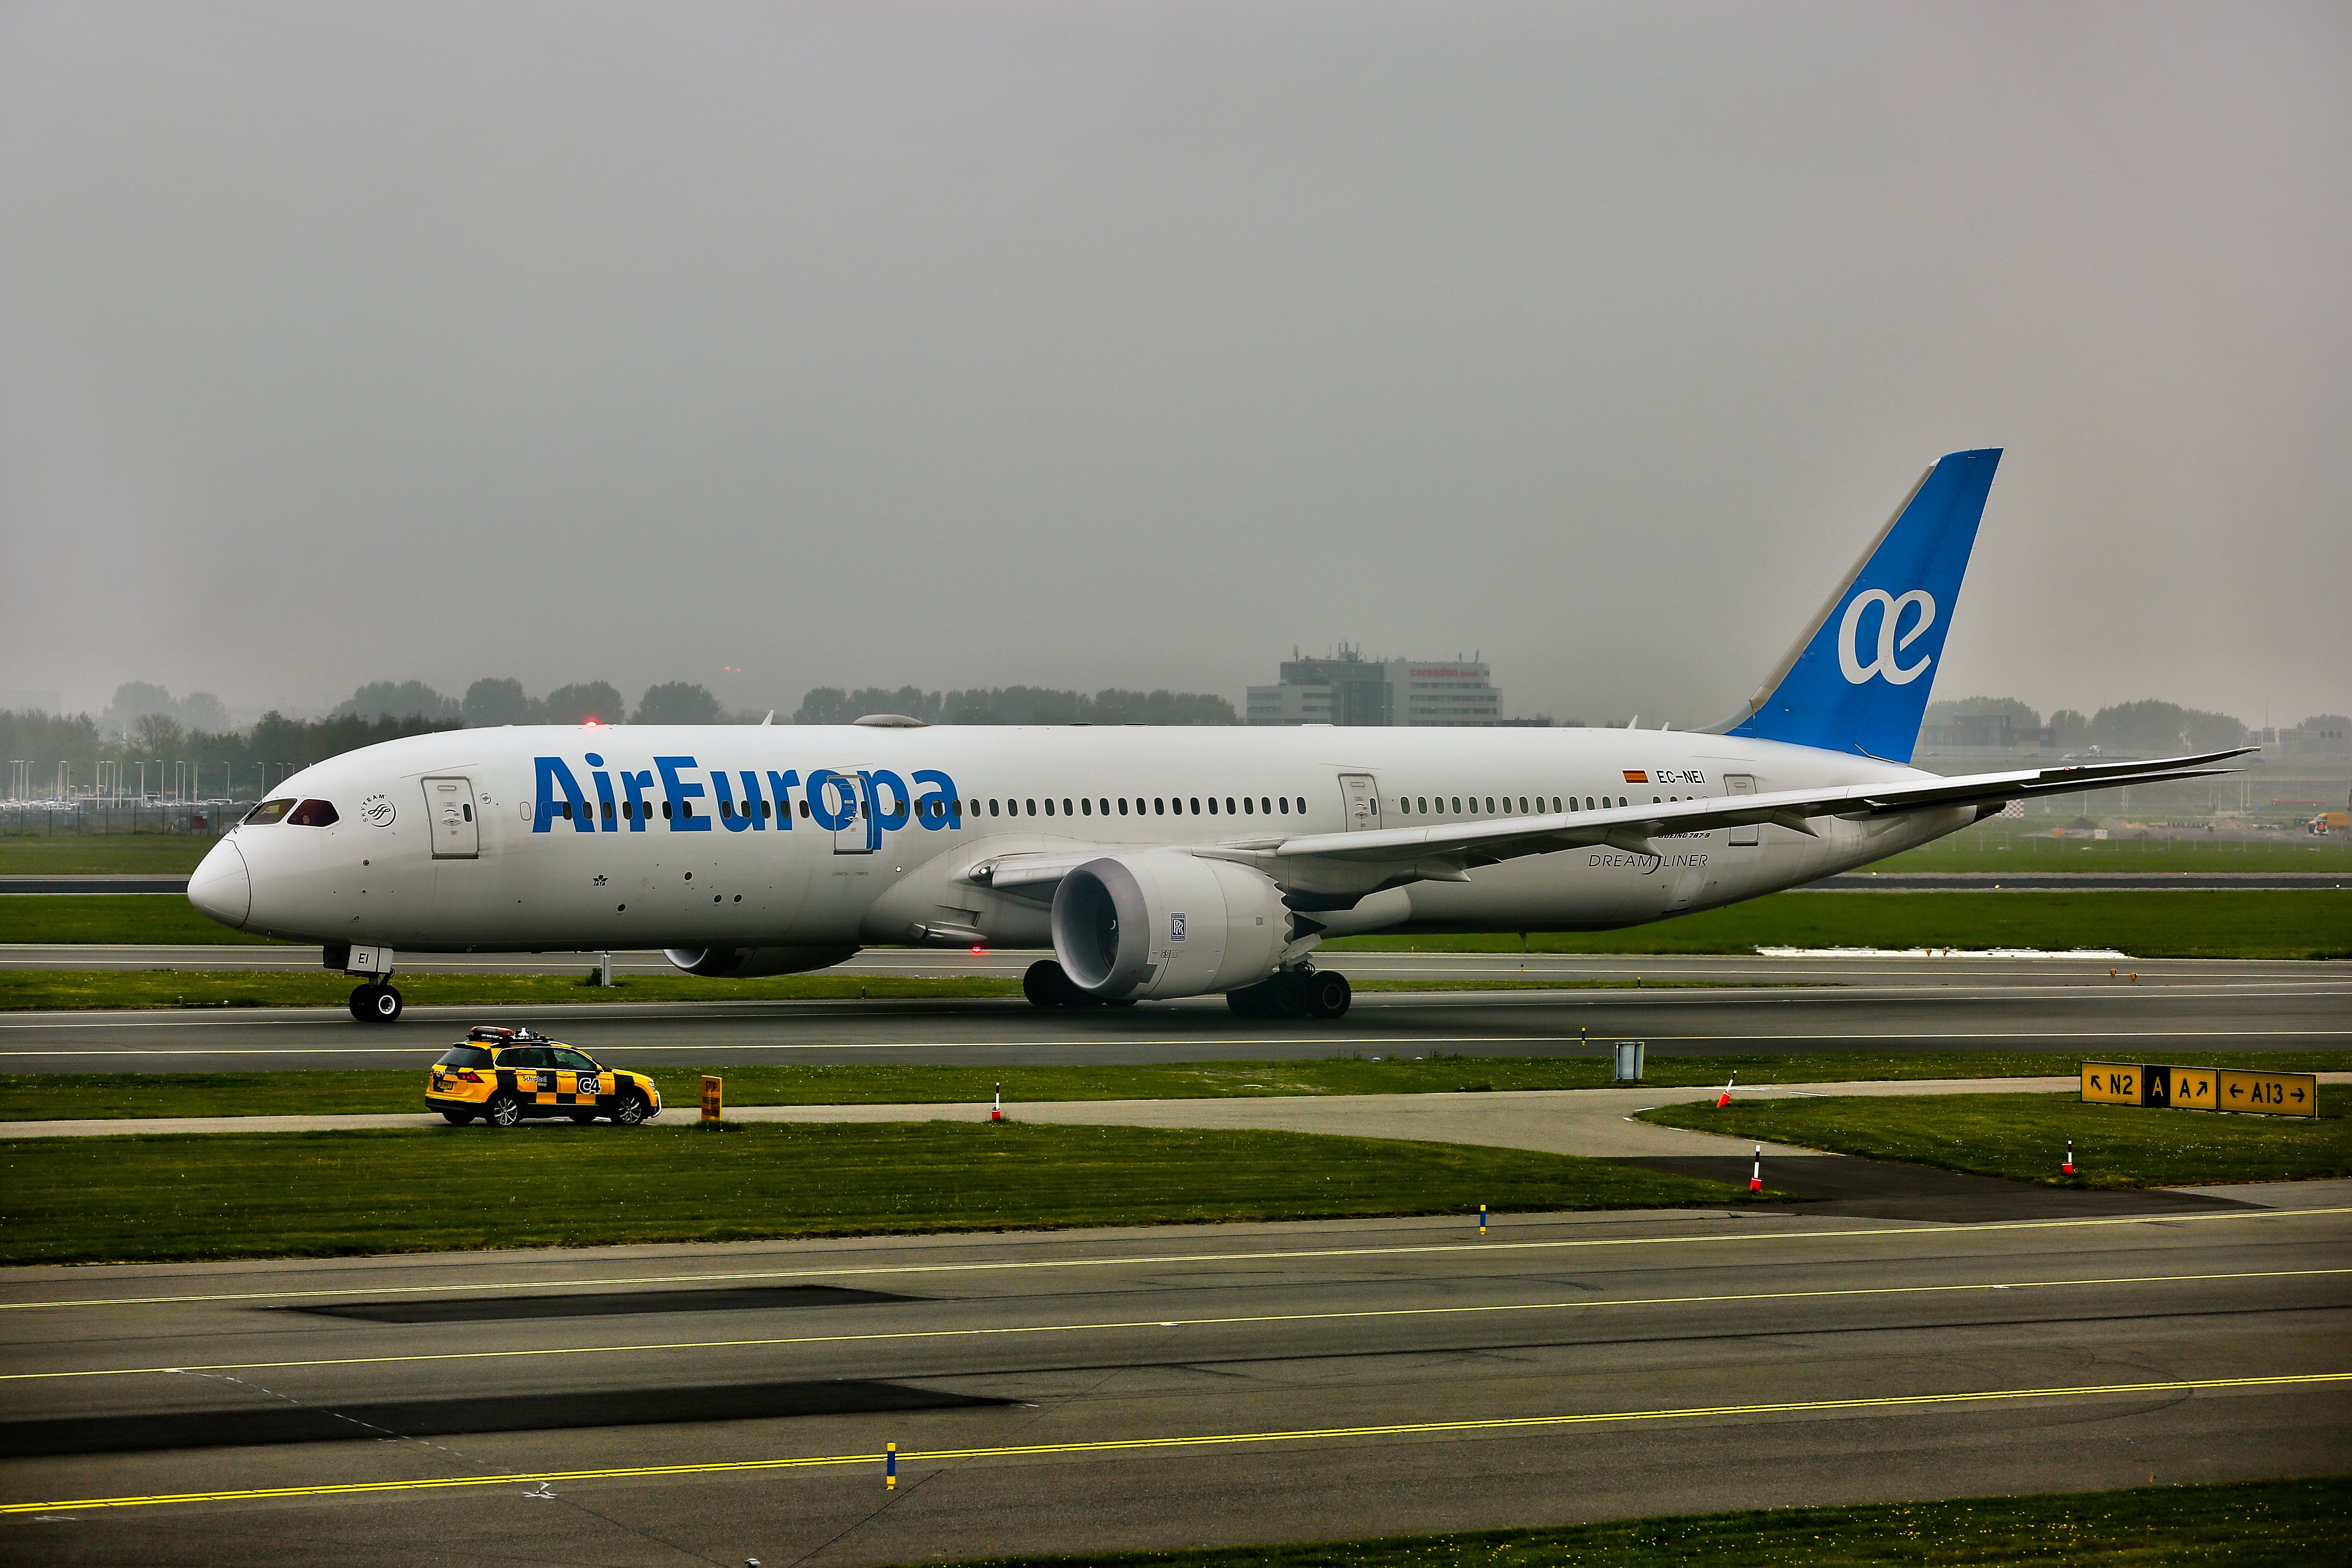 An Air Europa aircraft